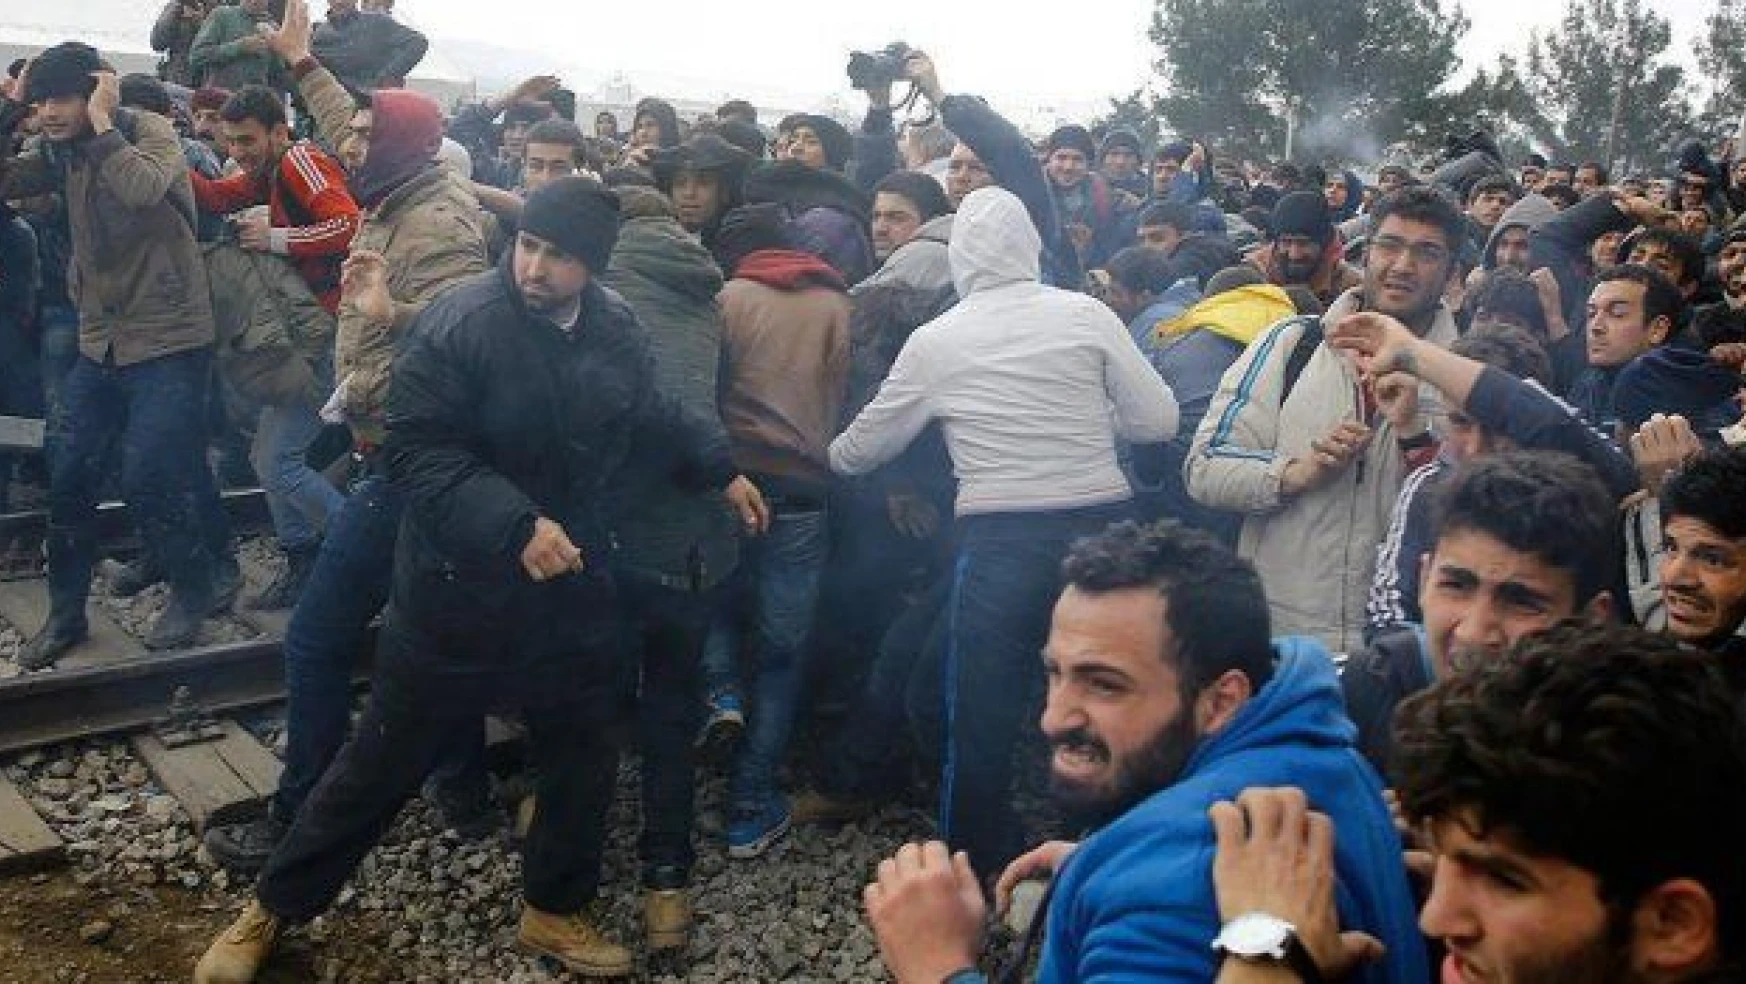 Midilli'de göçmenler ve polis arasında çatışma çıktı